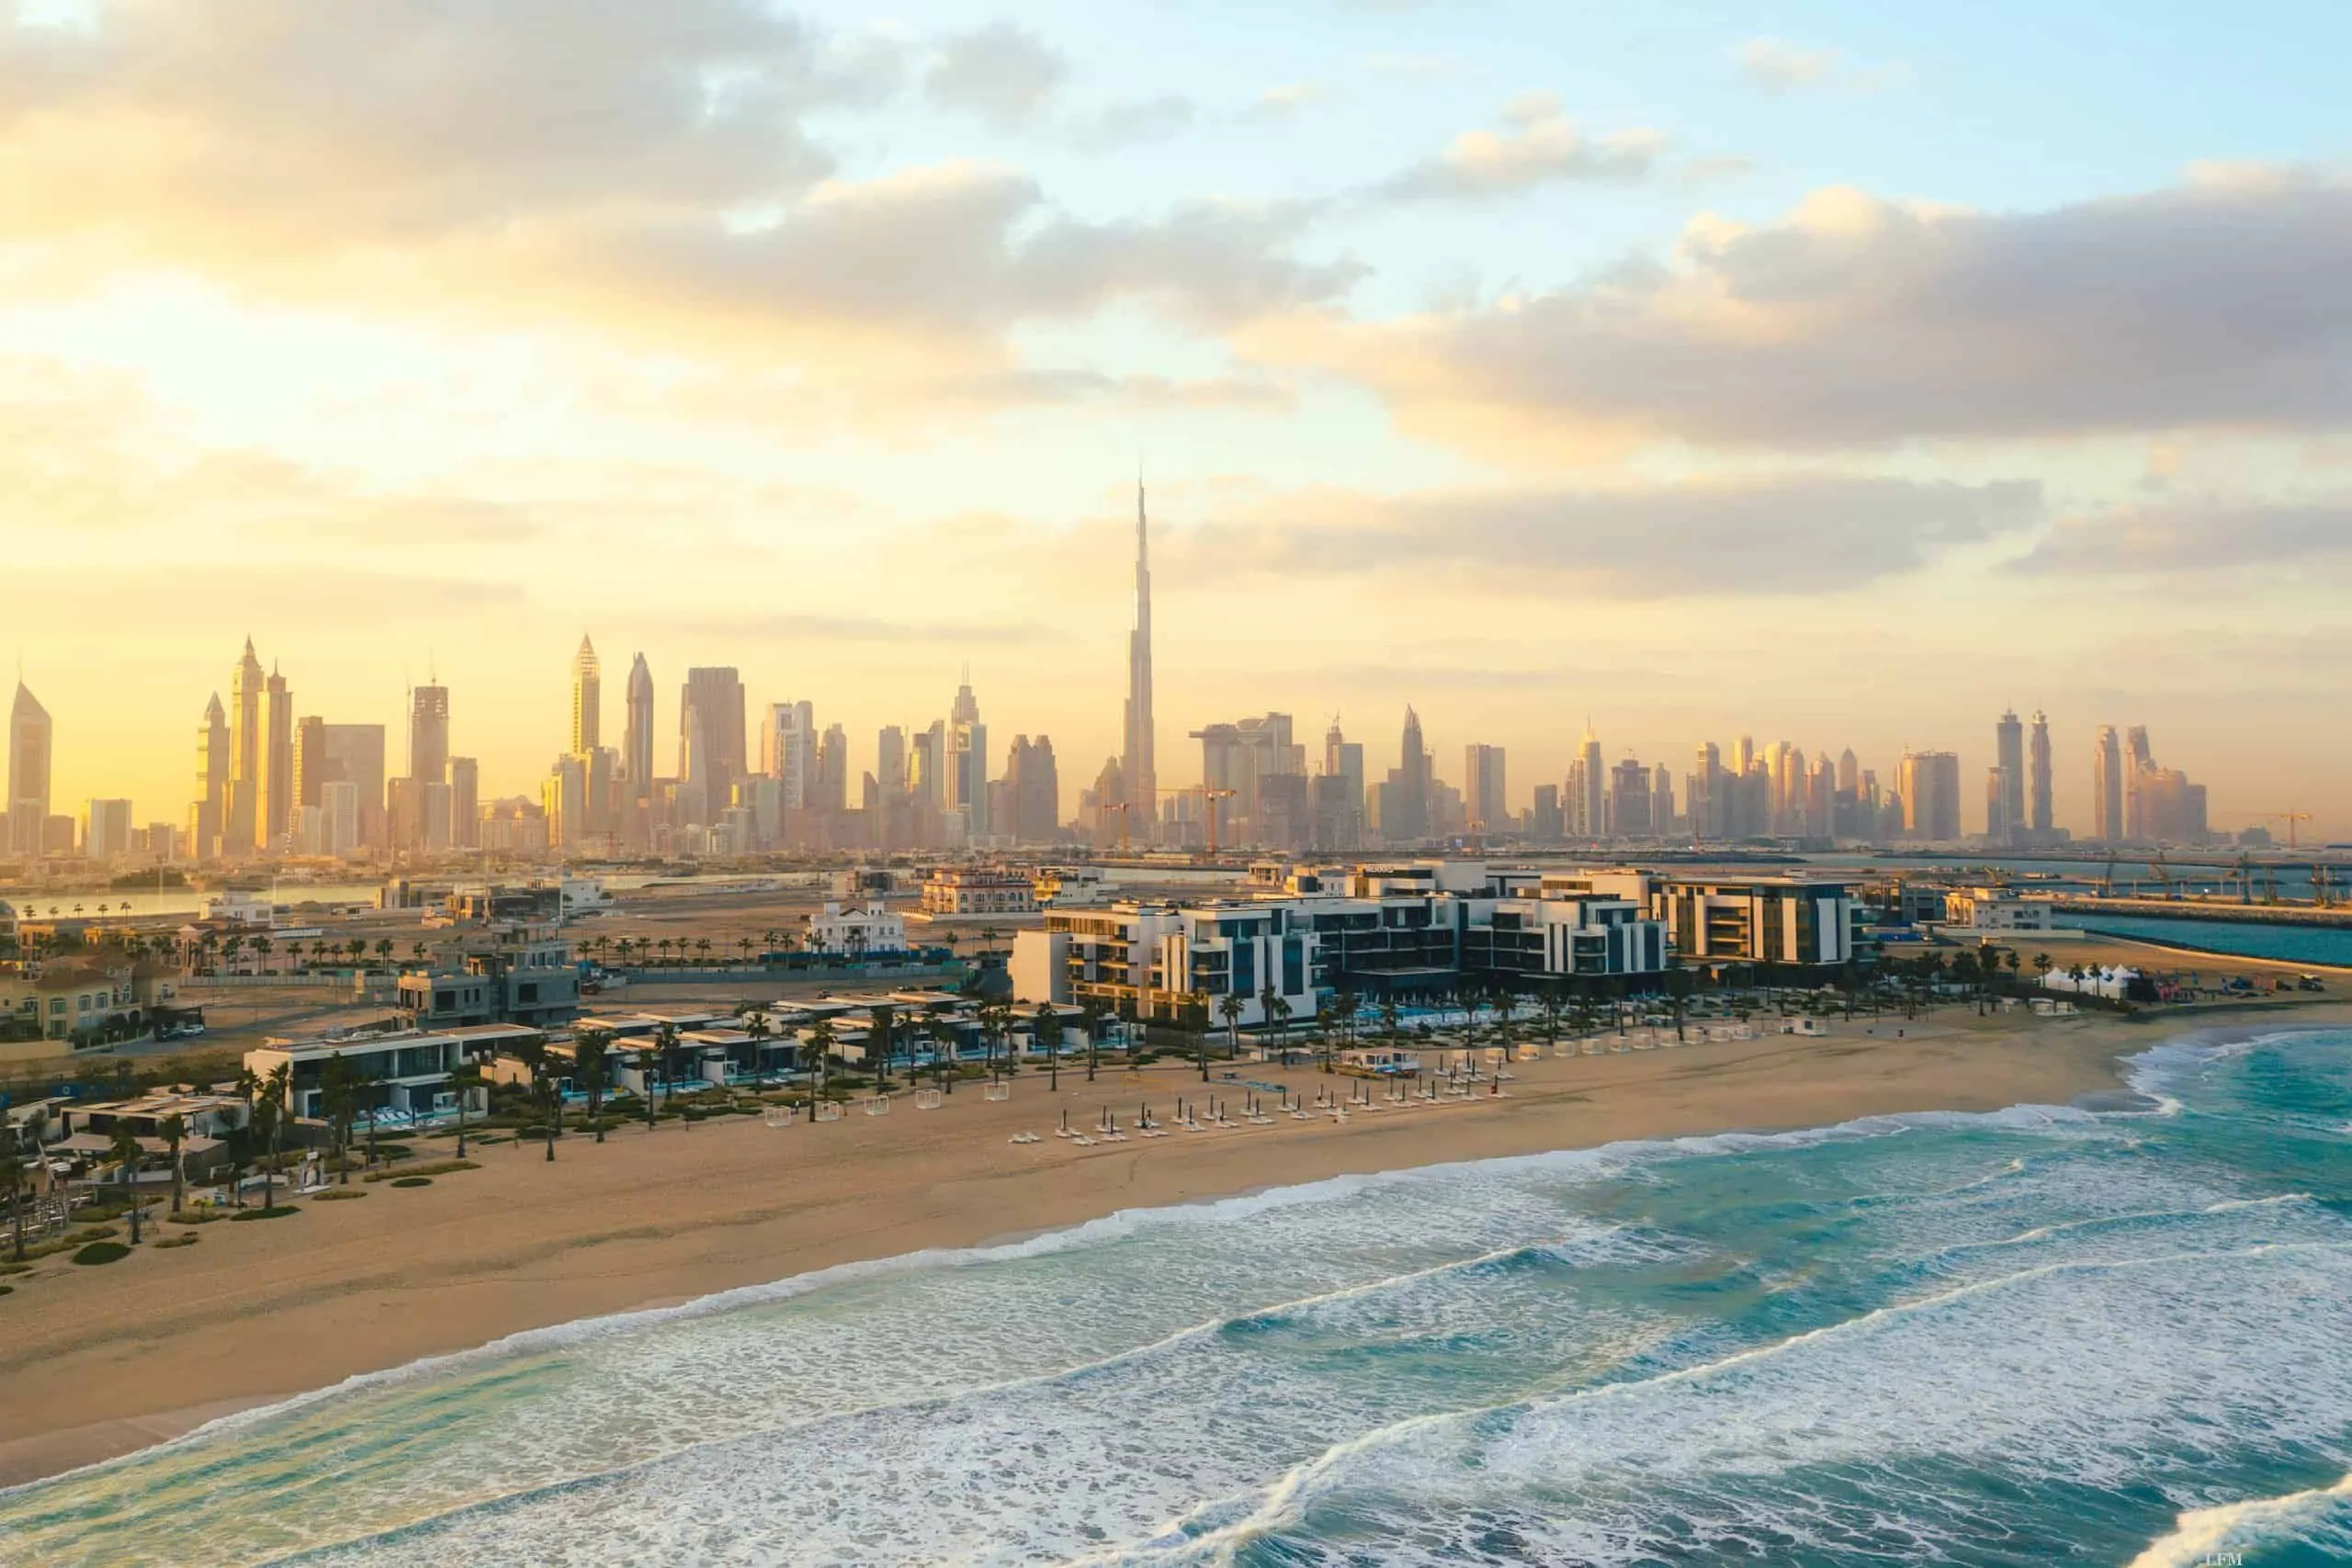 Emirates bietet Reiseerlebnis für Dubai-Touristen